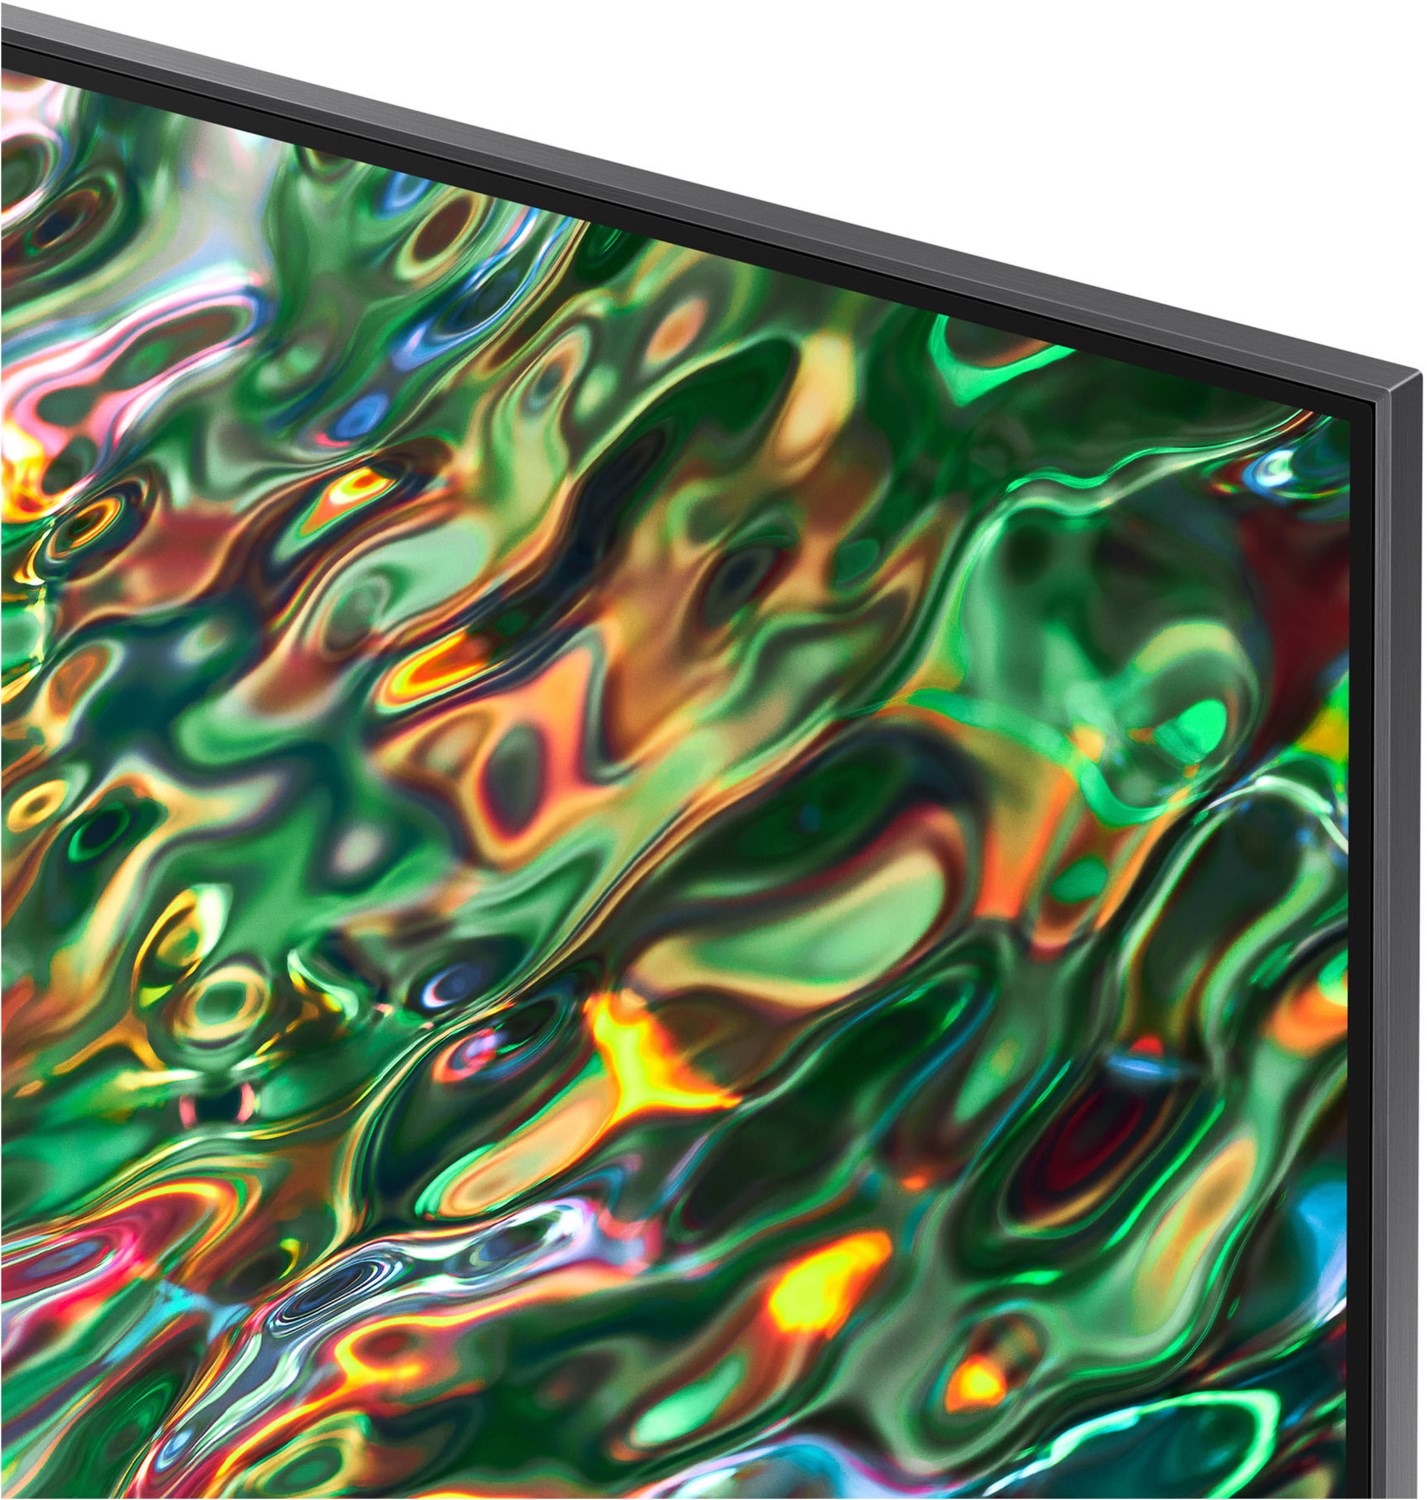 Samsung QLED-TV 65 Zoll (163 cm) QN93B carbon silber